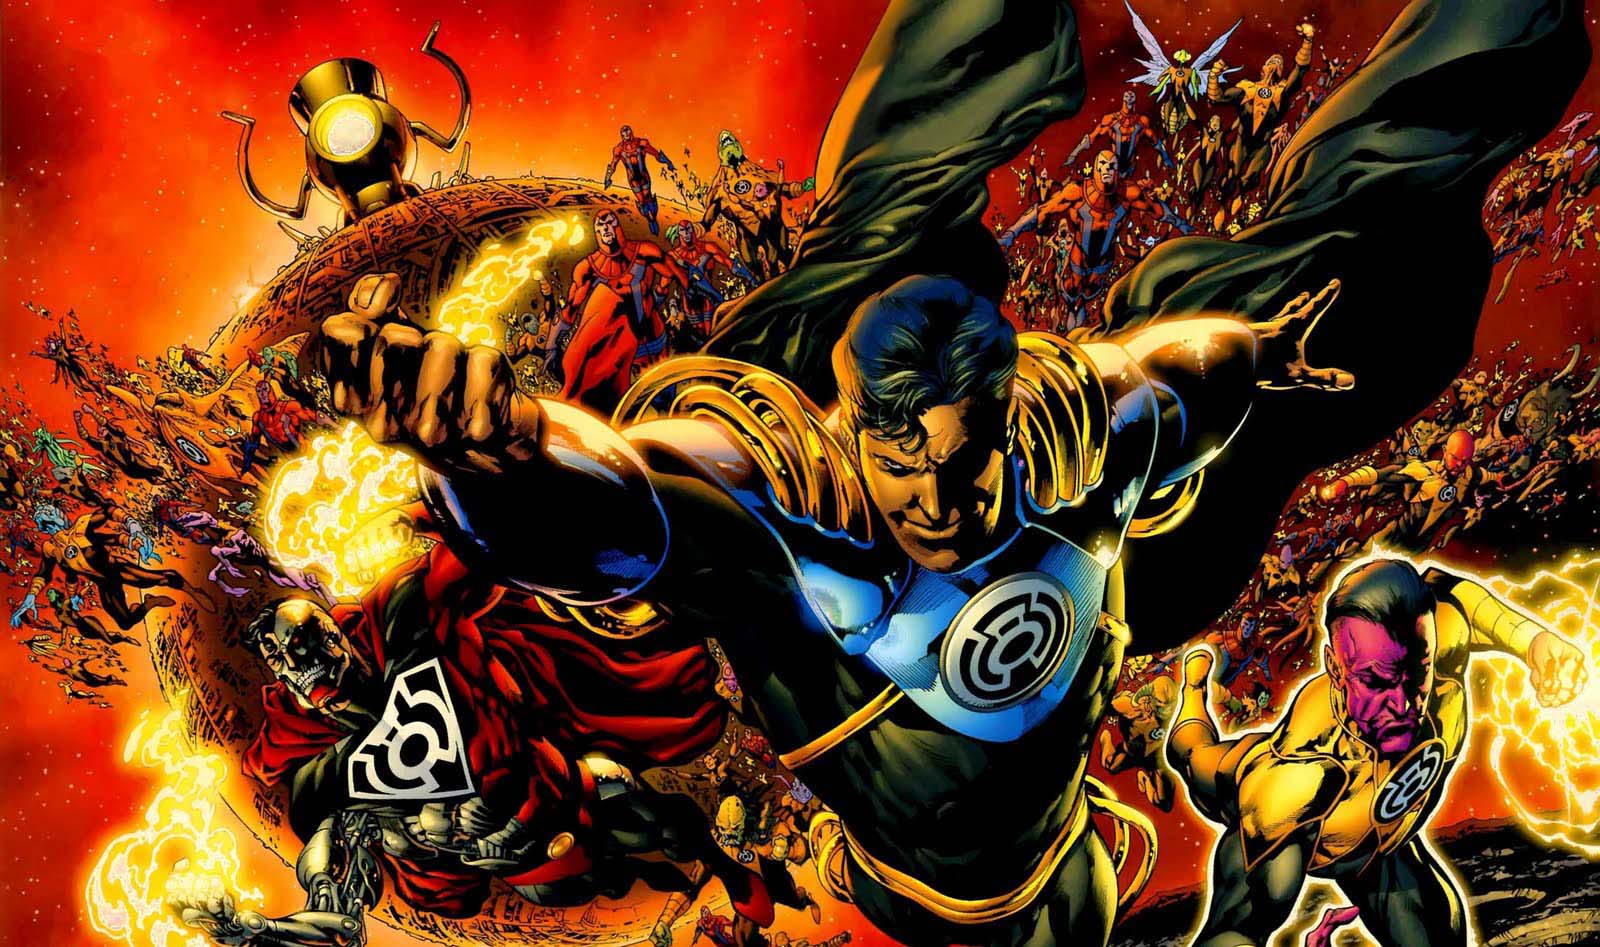 Читать сильный герой. Корпус Синестро DC Comics. Superboy Prime Sinestro. Супербой Прайм ДС комикс. Супербой Прайм красный фонарь.